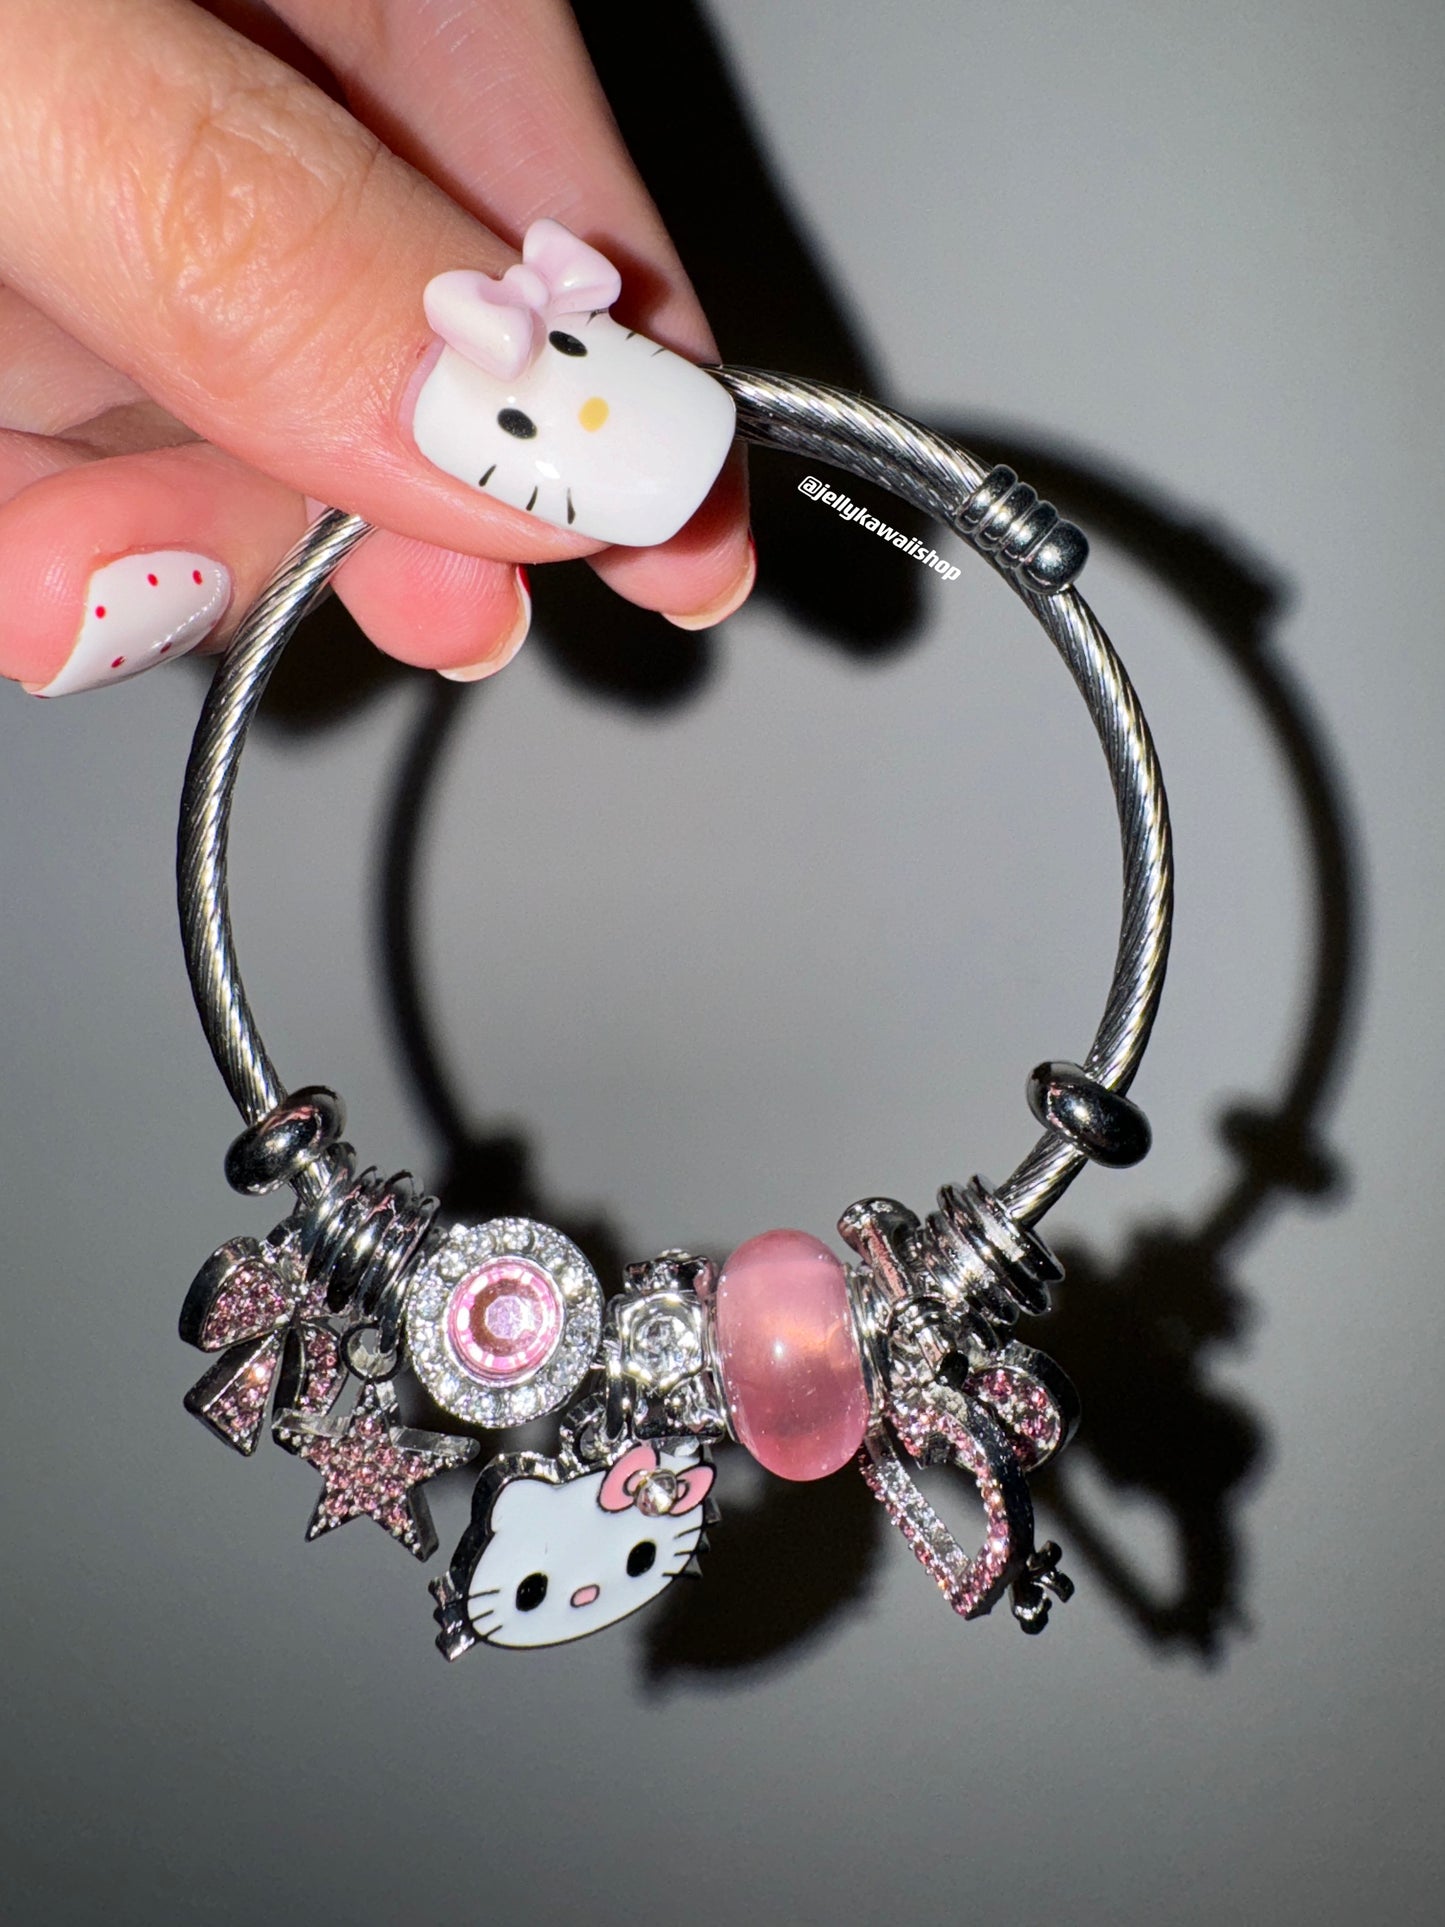 KT Charm Bracelets Stainless Steel Bangle Bracelet Birthday Christmas Jewelry Gift for Women Girls